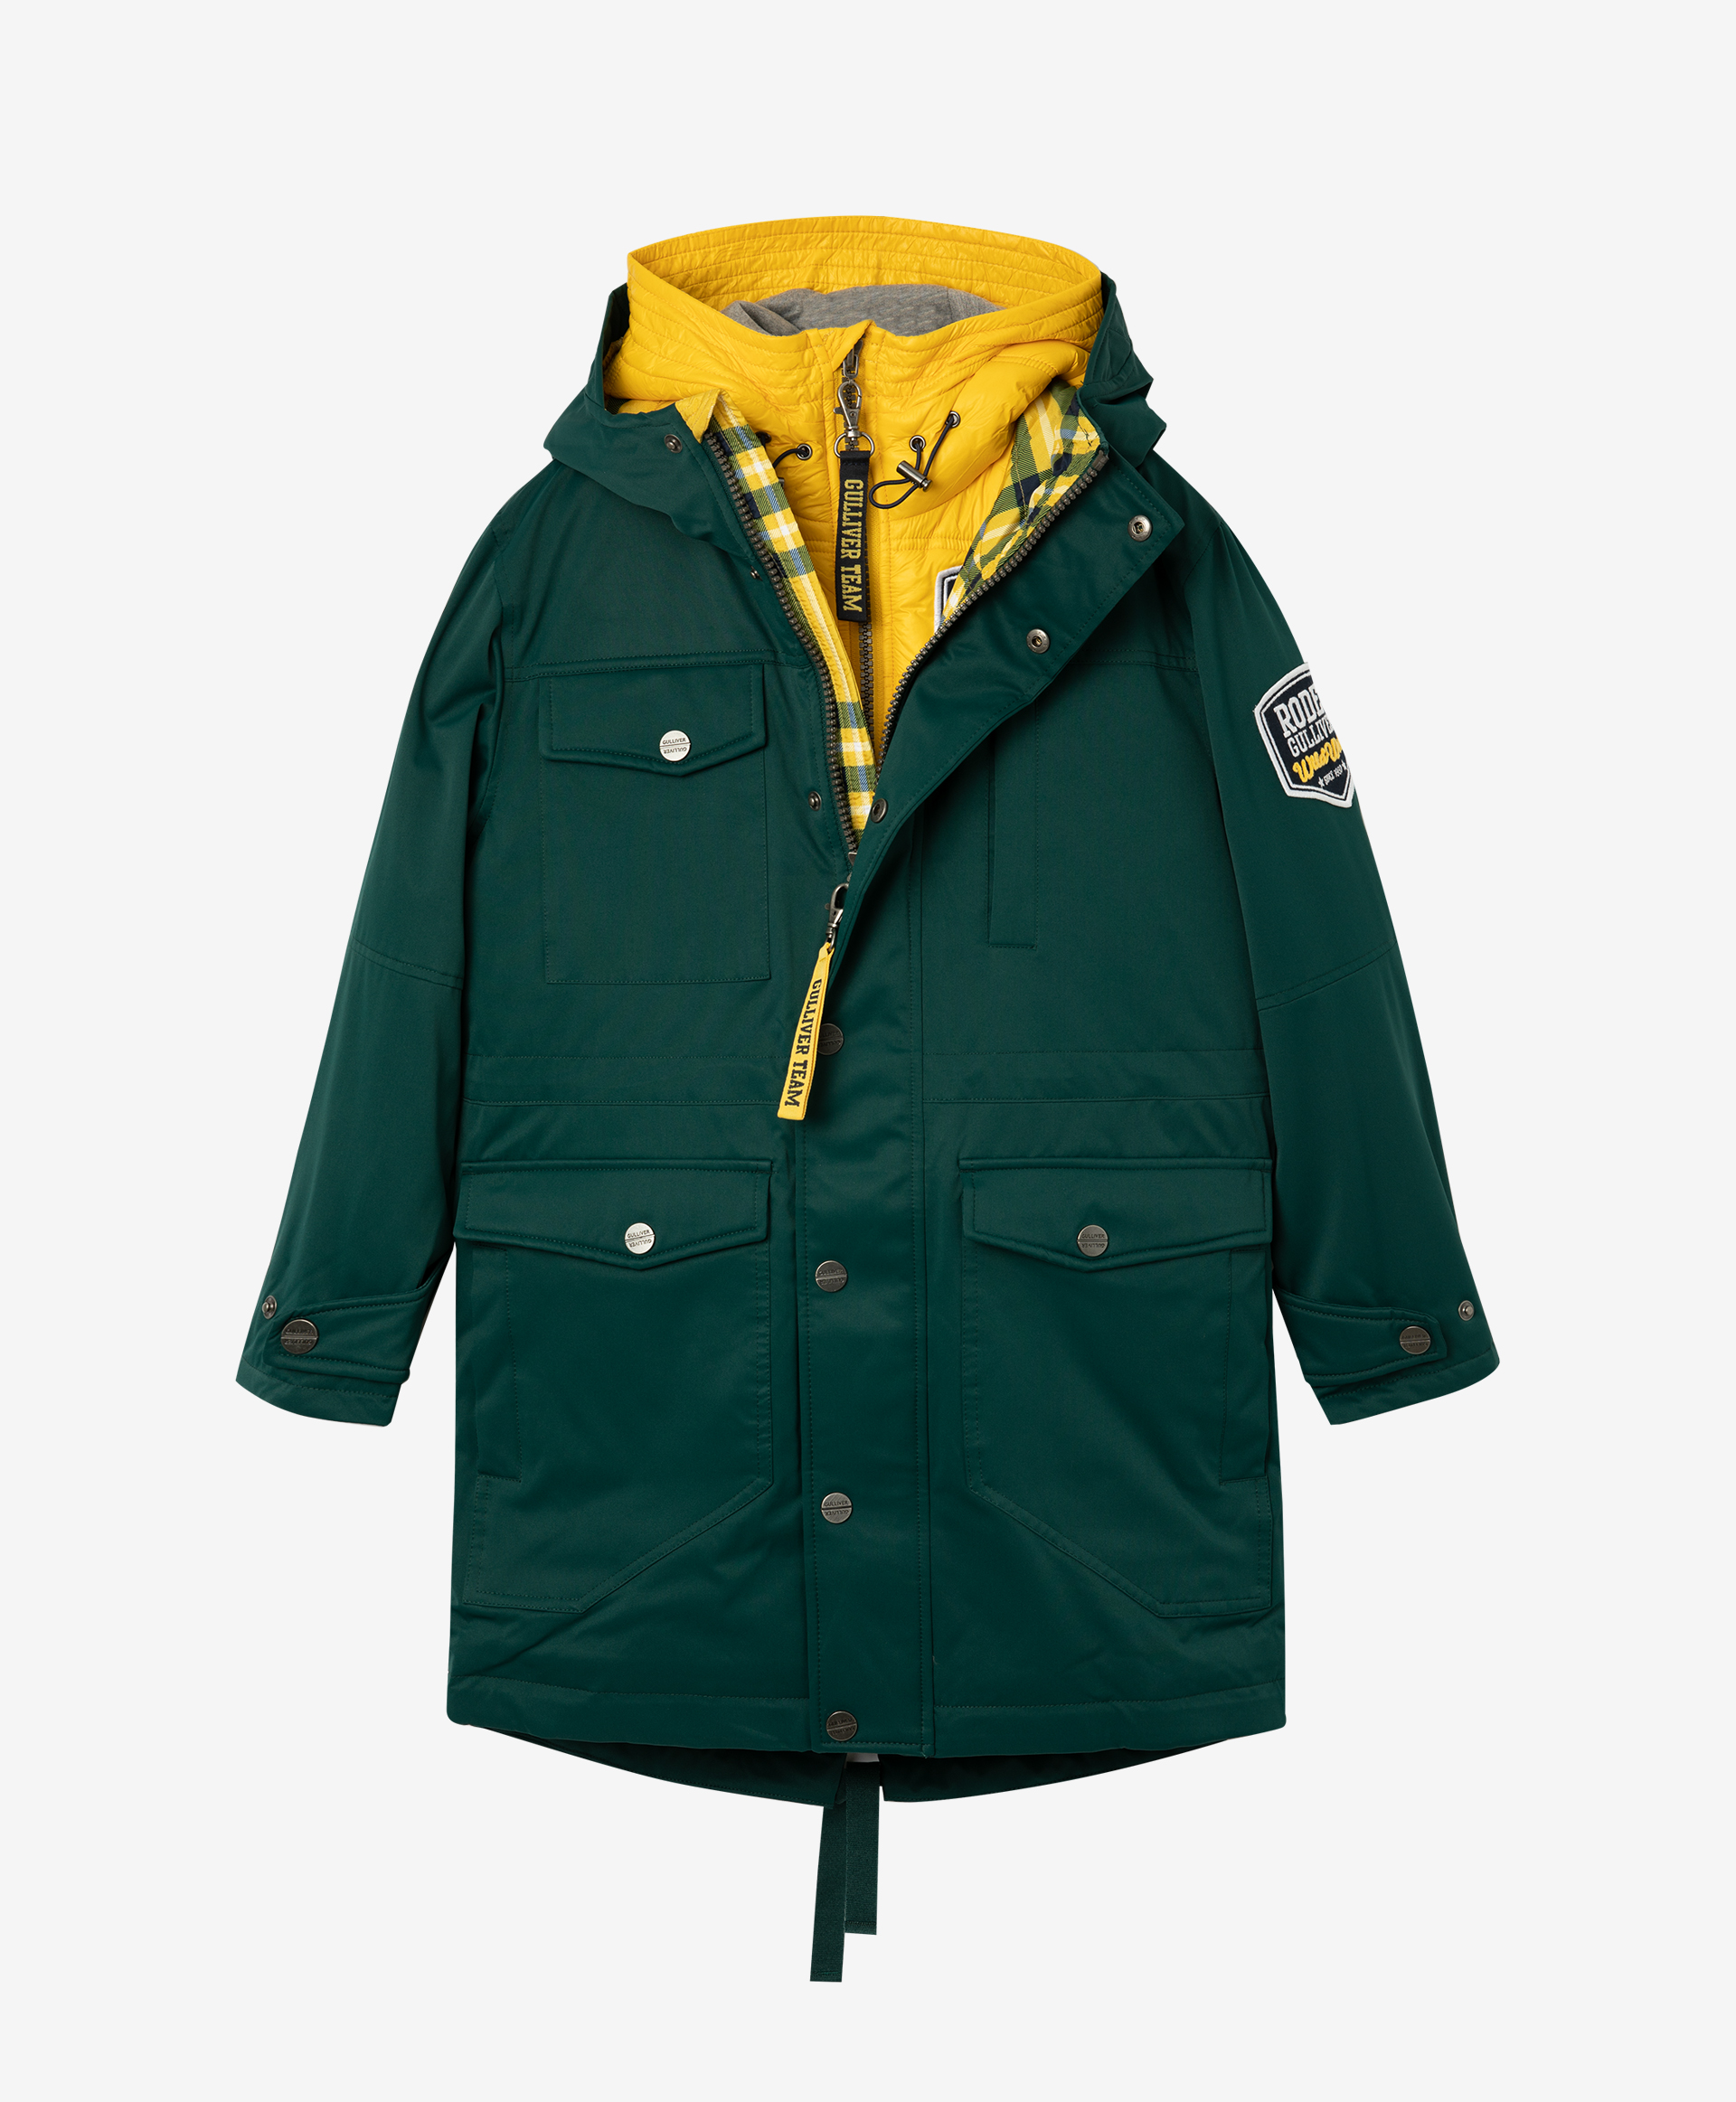 Комплект: куртка и жилет Gulliver 22011BJC4505, размер 164, цвет зеленый - фото 3